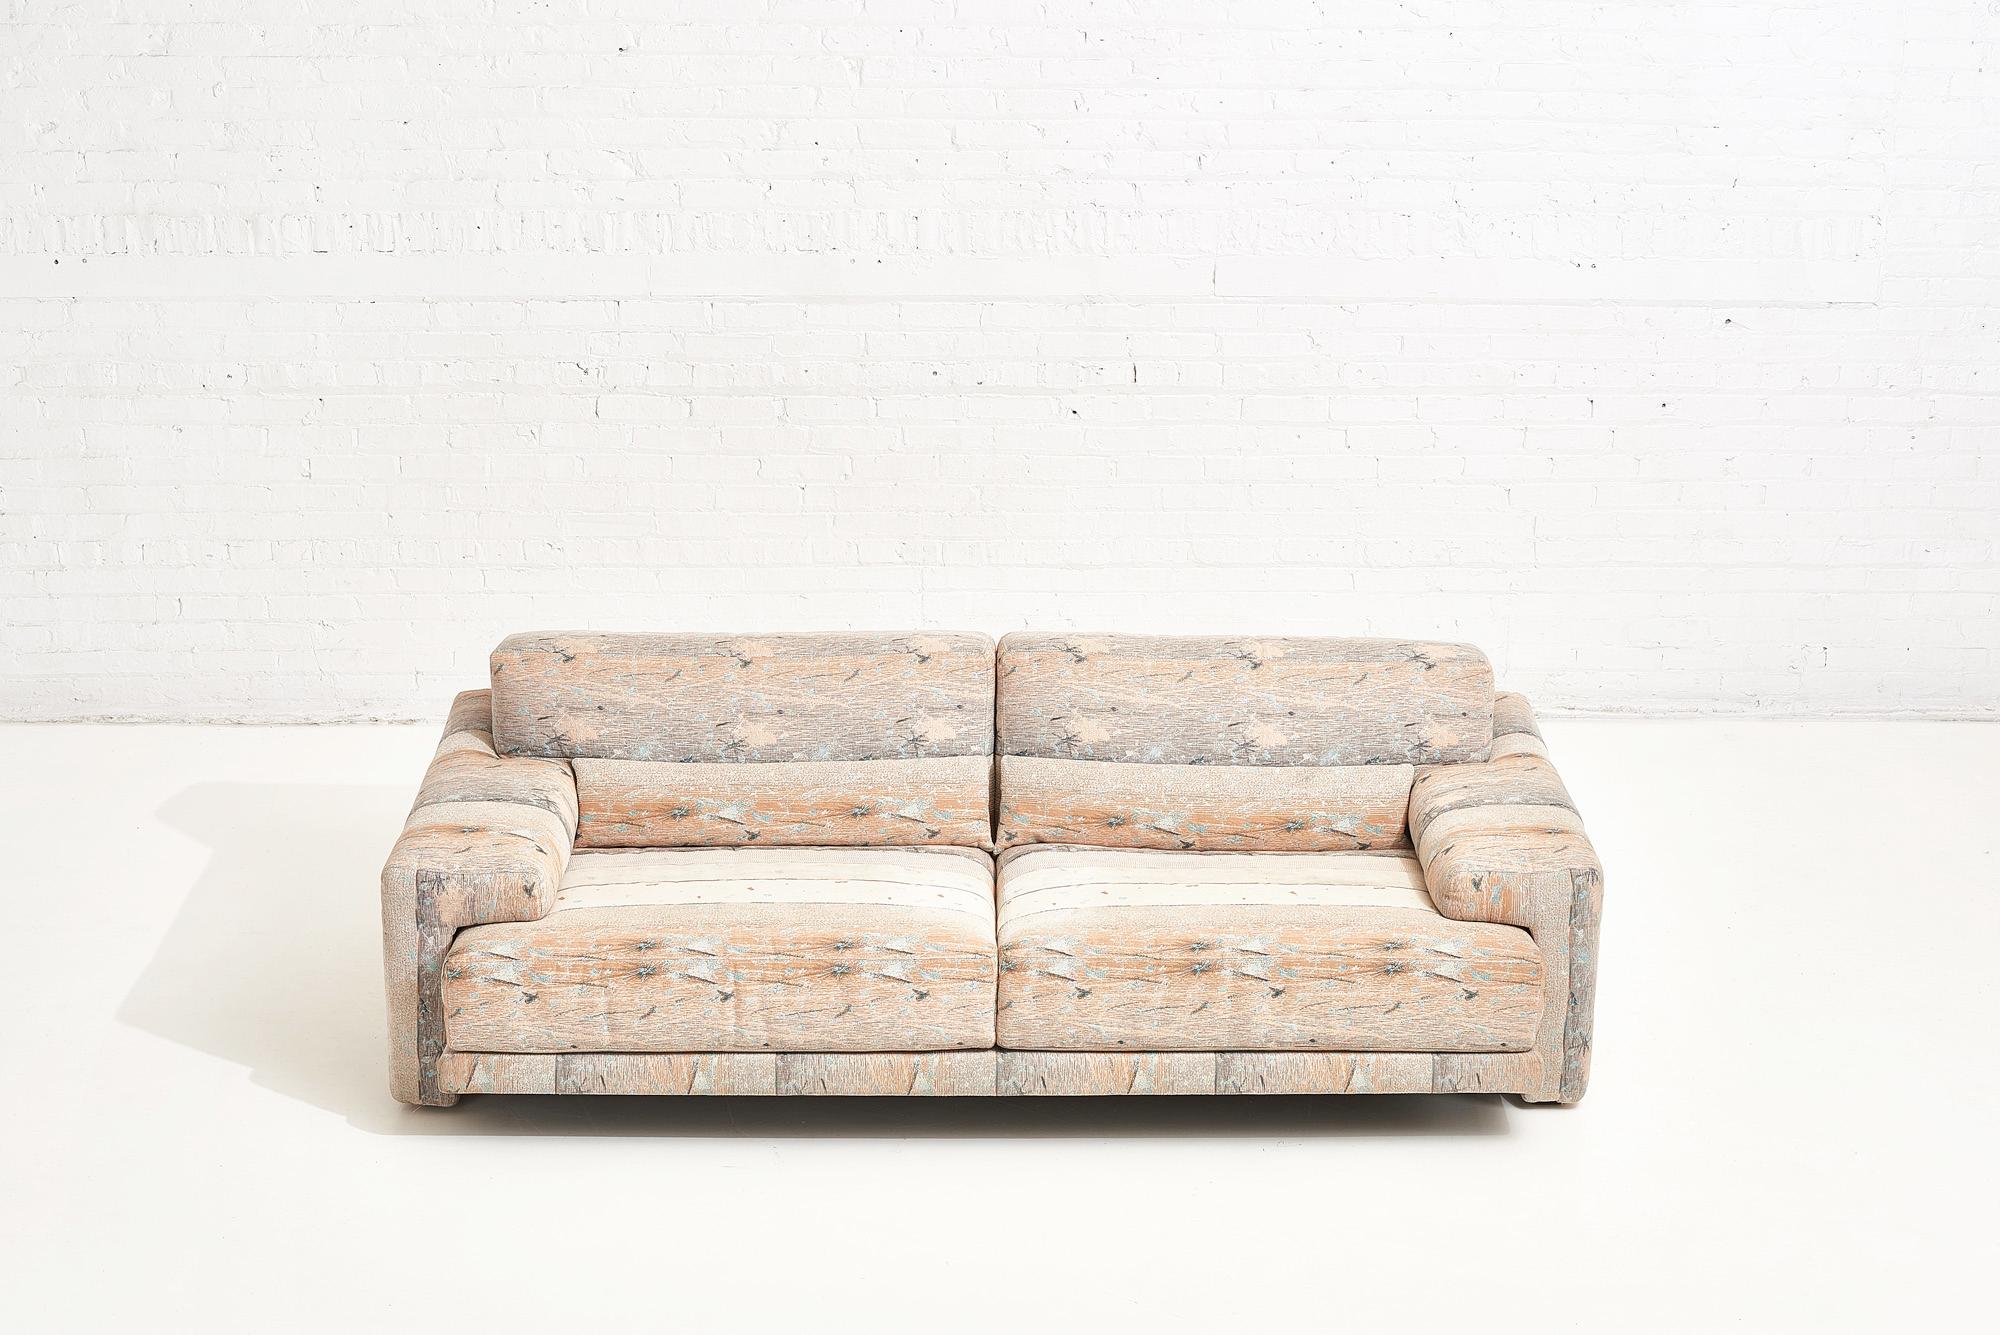 Sofa designed by Giovanni Offredi for Saporiti, Italy. Original condition.